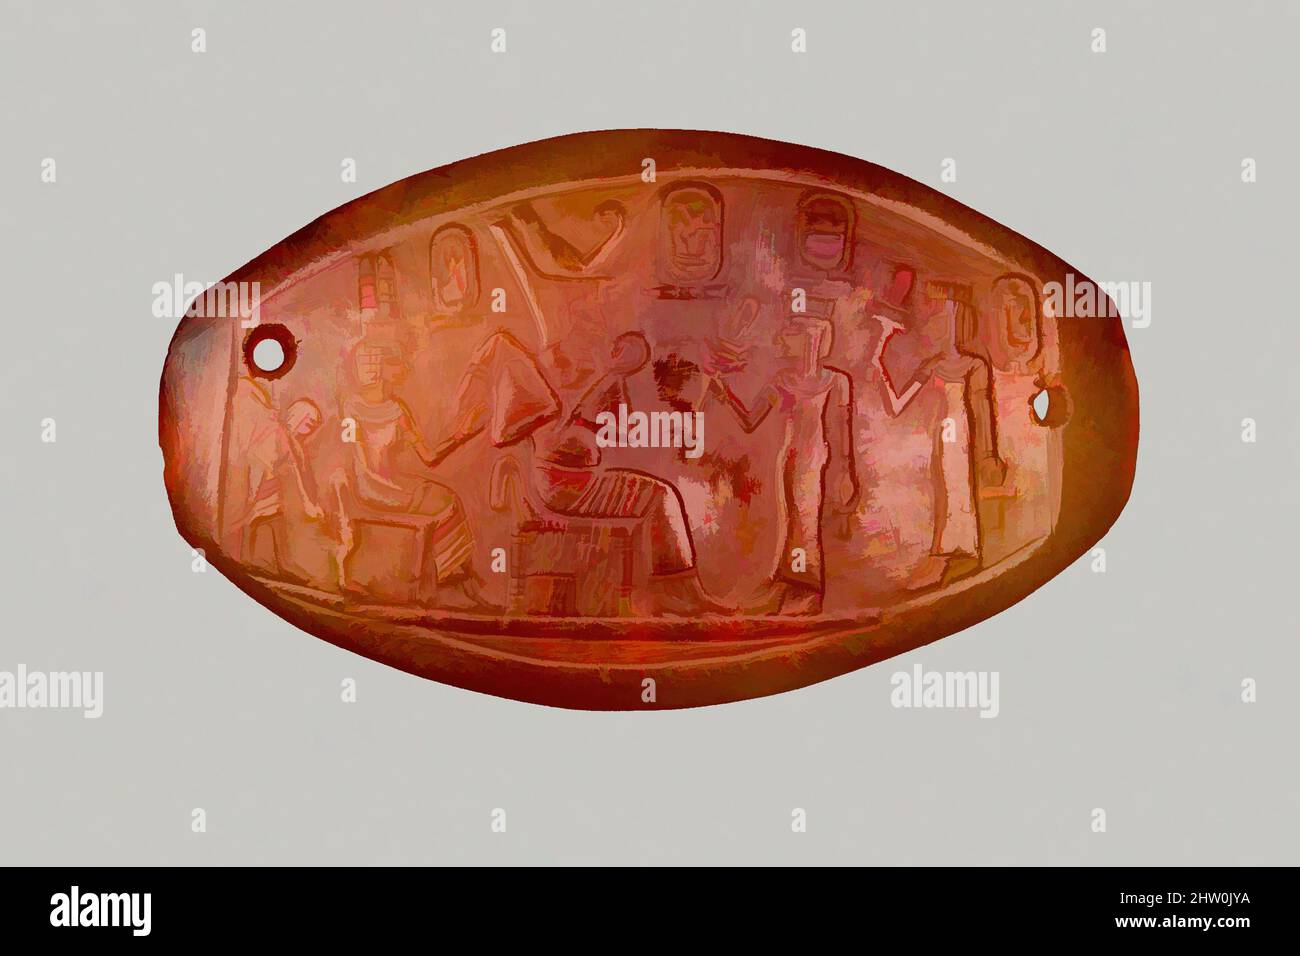 Arte ispirata da lapide intagliate di Amenhotep III, New Kingdom, Dynasty 18, ca. 1390–1352 a.C., dall'Egitto, carnelia, h. 2,3 cm (7/8 poll.); w. 4,1 cm (1 5/8 poll.); th. 0,2 cm (1/16 pollici), due principesse, ognuna con un sistrum e una ankh, si affacciano sull'intronata Amenhotep III e la regina Tiye, che, opere classiche modernizzate da Artotop con un tuffo di modernità. Forme, colore e valore, impatto visivo accattivante sulle emozioni artistiche attraverso la libertà delle opere d'arte in modo contemporaneo. Un messaggio senza tempo che persegue una nuova direzione selvaggiamente creativa. Artisti che si rivolgono al supporto digitale e creano l'NFT Artotop Foto Stock